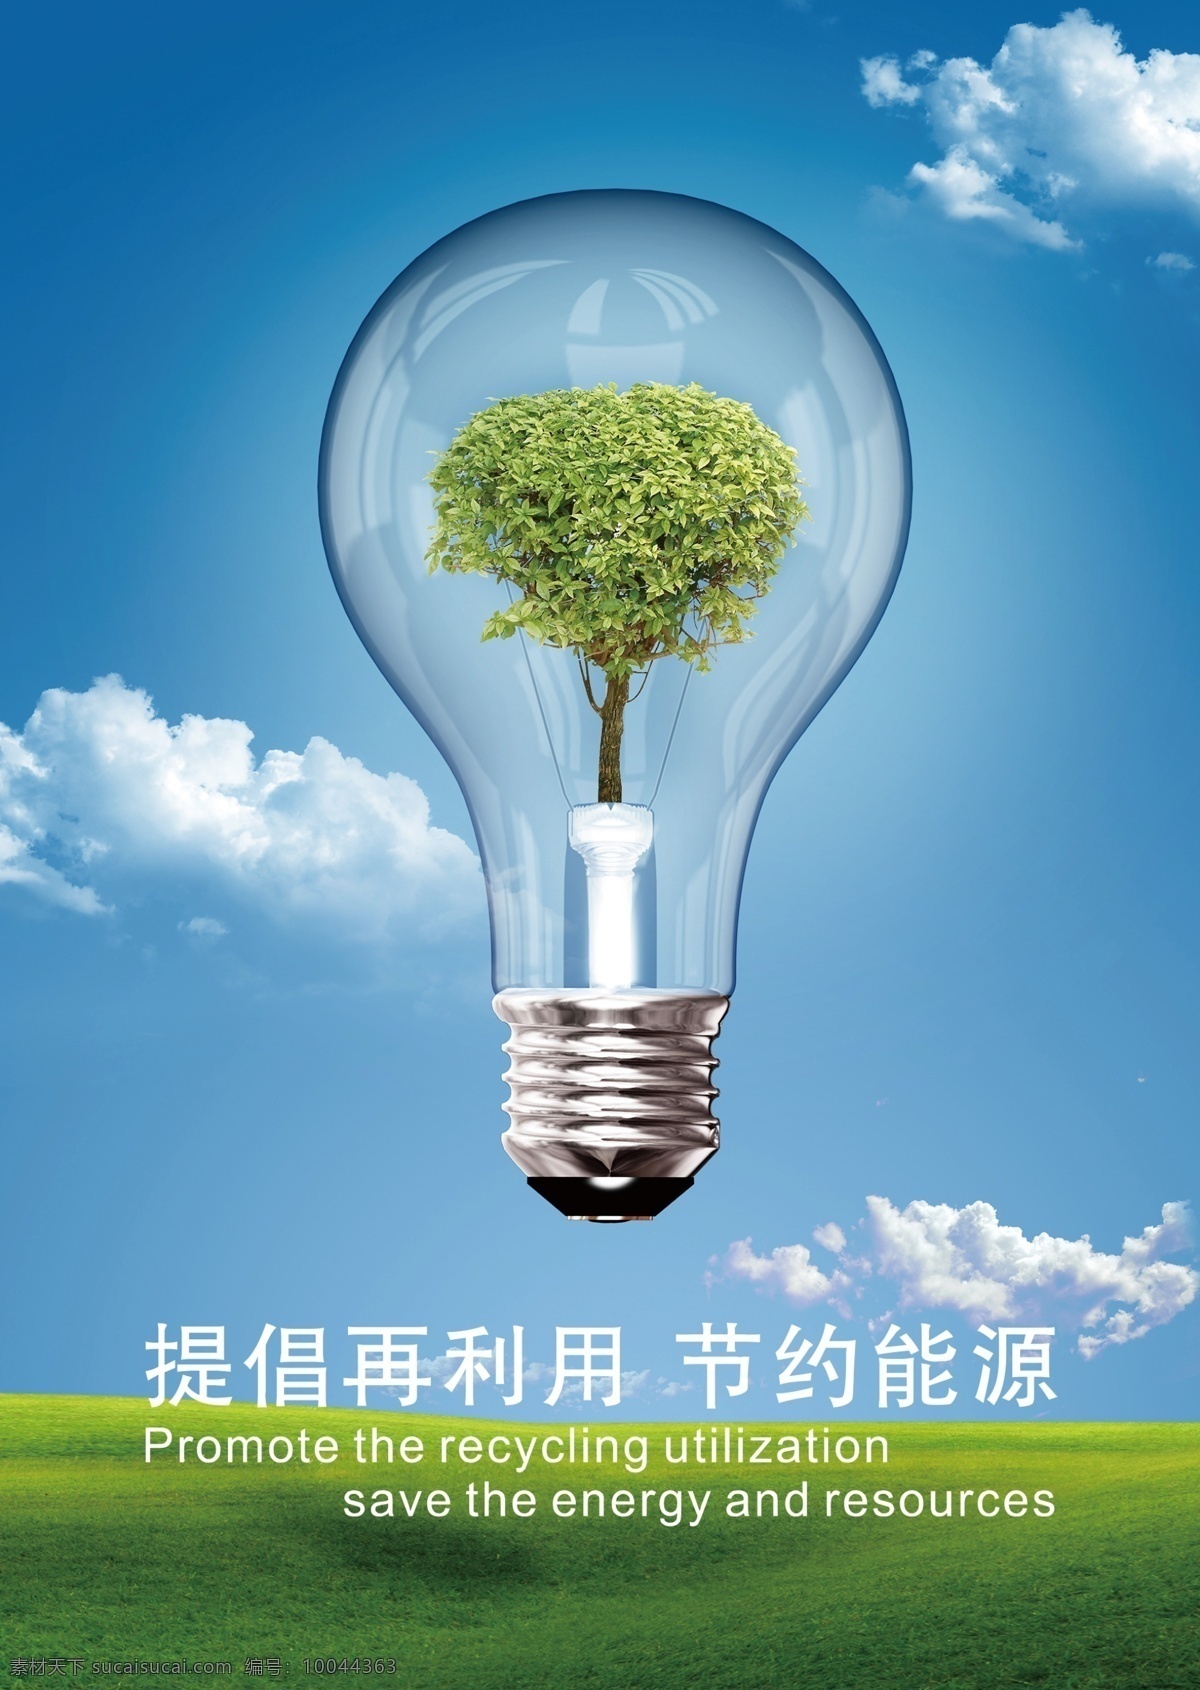 环保 节约 提倡再利用 节约能源 蓝天白云 草地 灯泡 绿树 青色 天蓝色